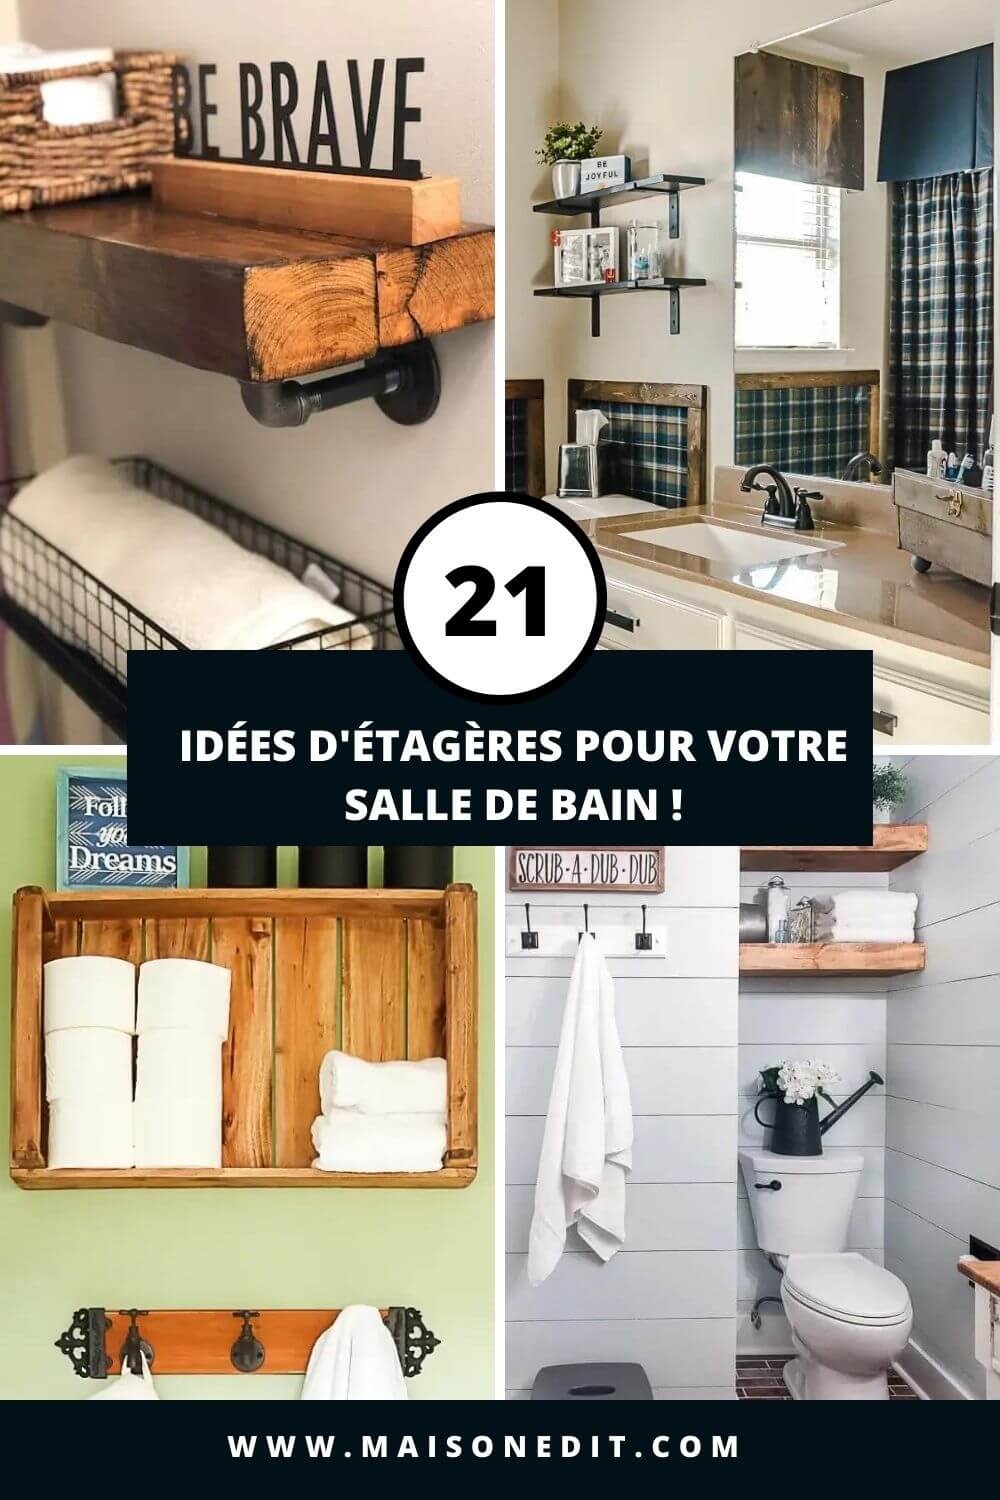 21+ Idées d'étagères pour votre salle de bain !